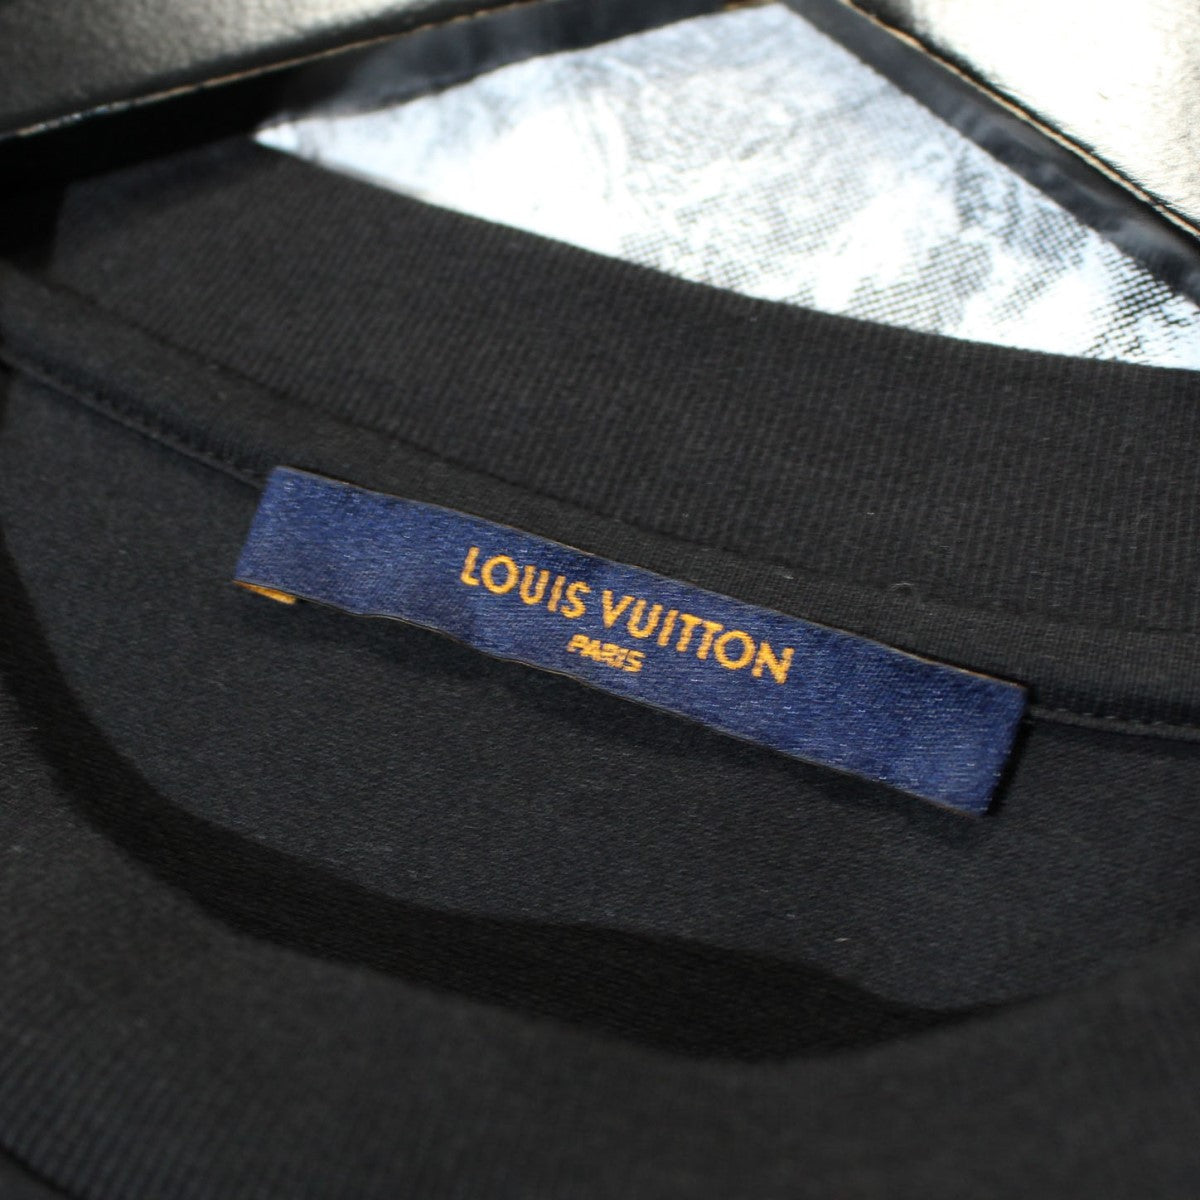 LOUIS VUITTON(ルイヴィトン) ホーリーマウンテンプリンテッドTシャツ ...